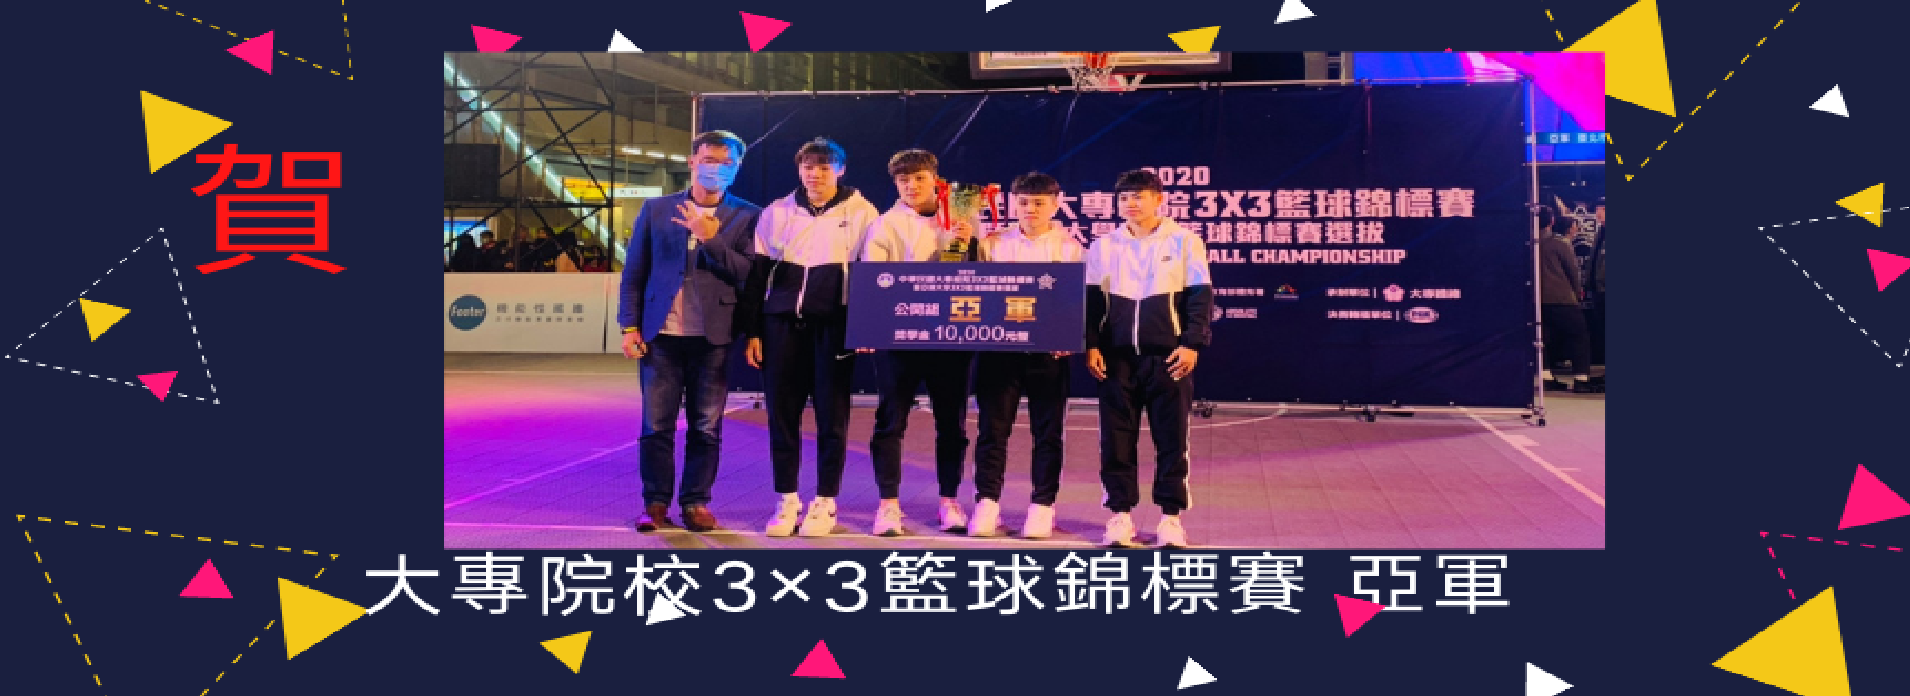 中華民國大專院校3×3籃球錦標賽